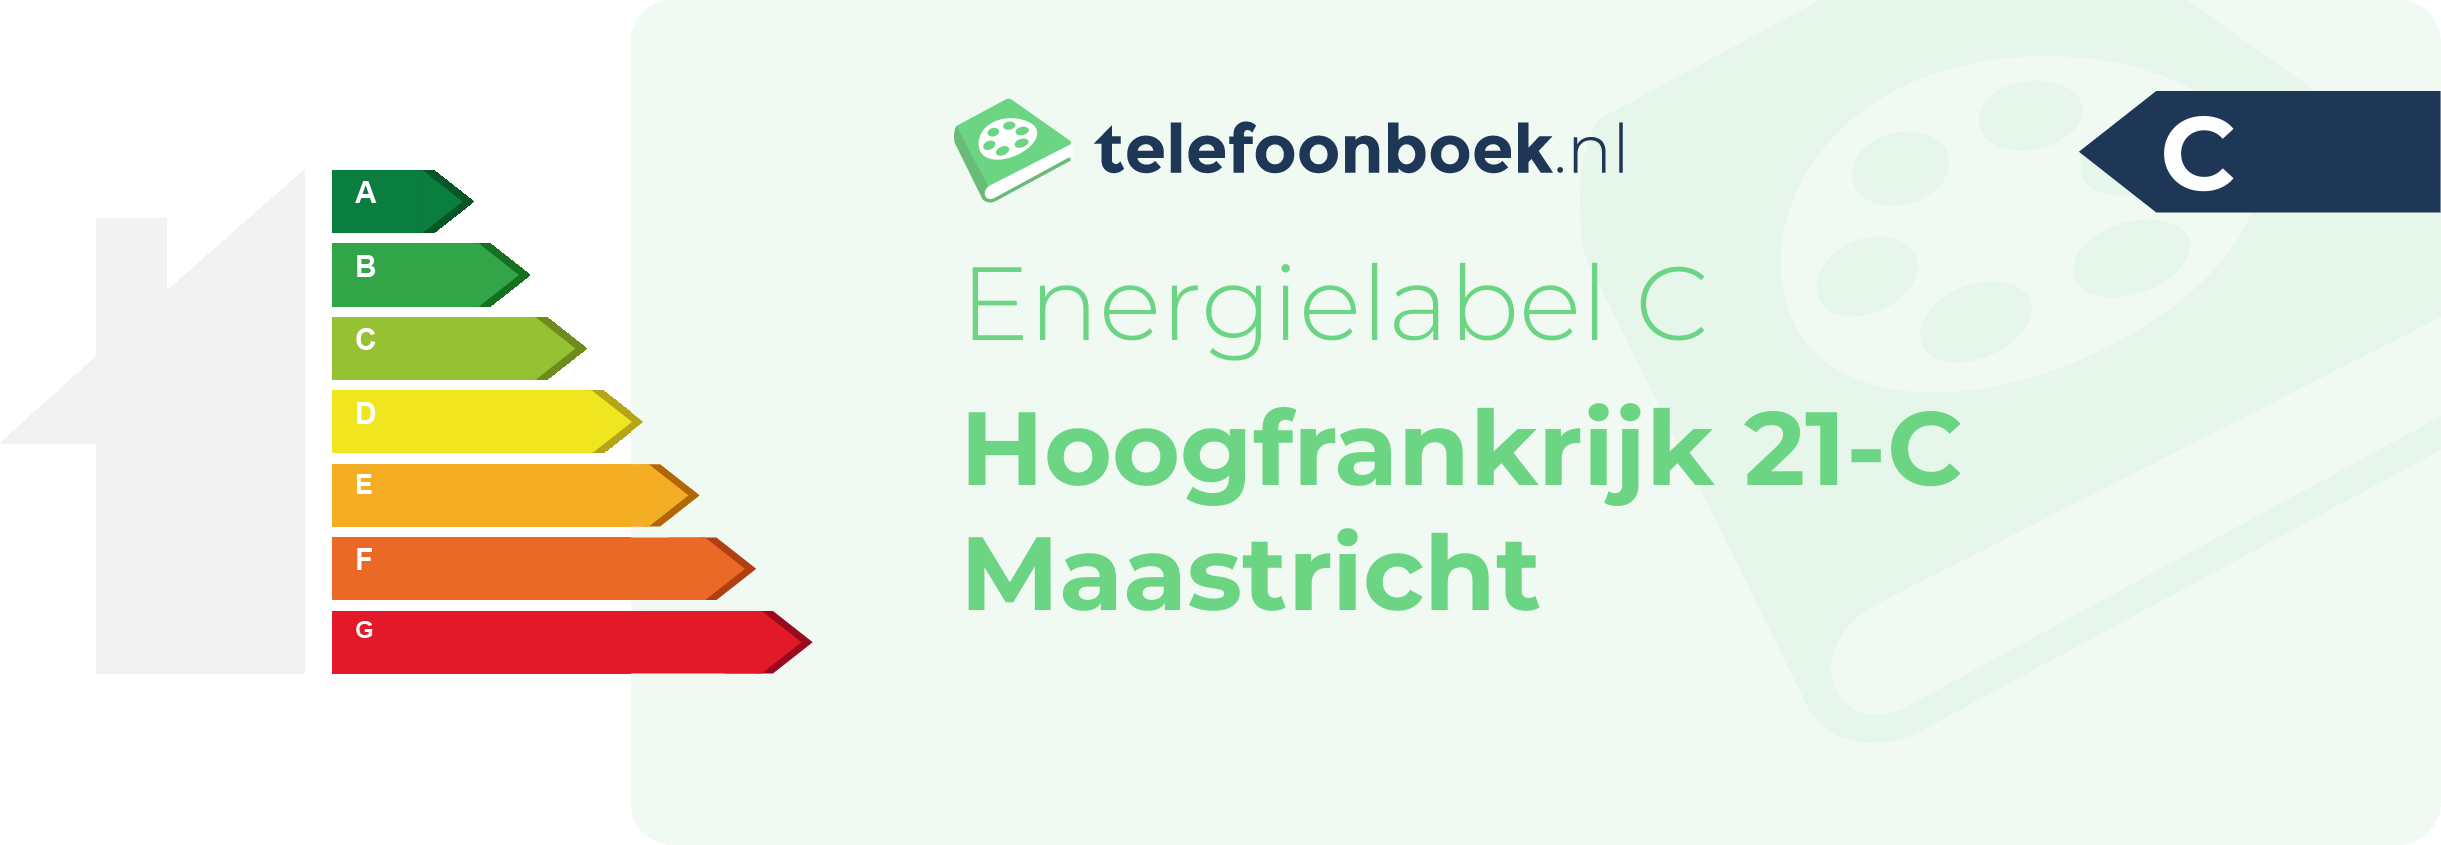 Energielabel Hoogfrankrijk 21-C Maastricht